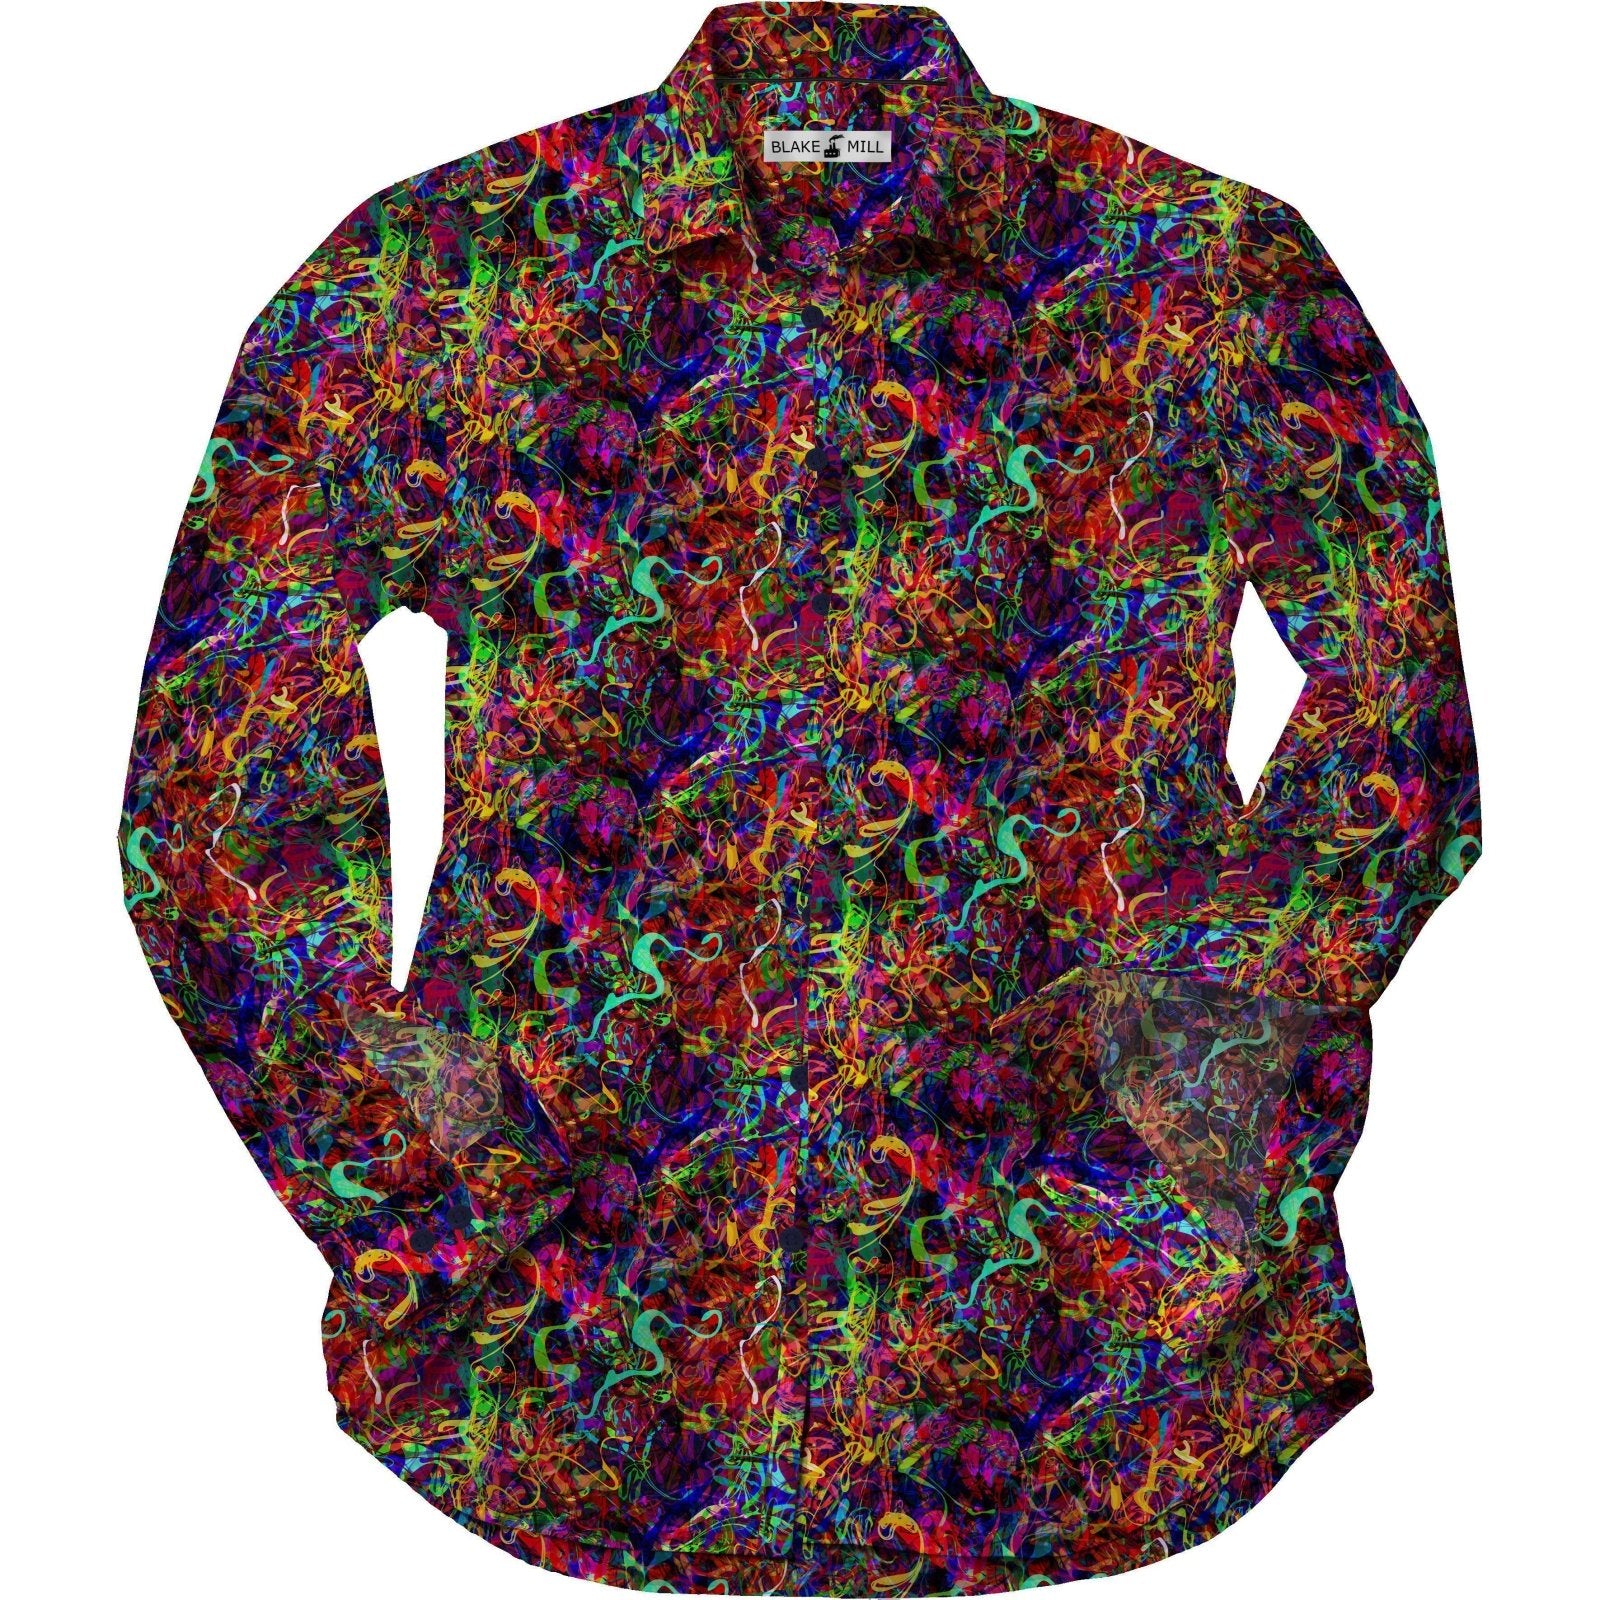 Brainwave Shirt - Blake Mill